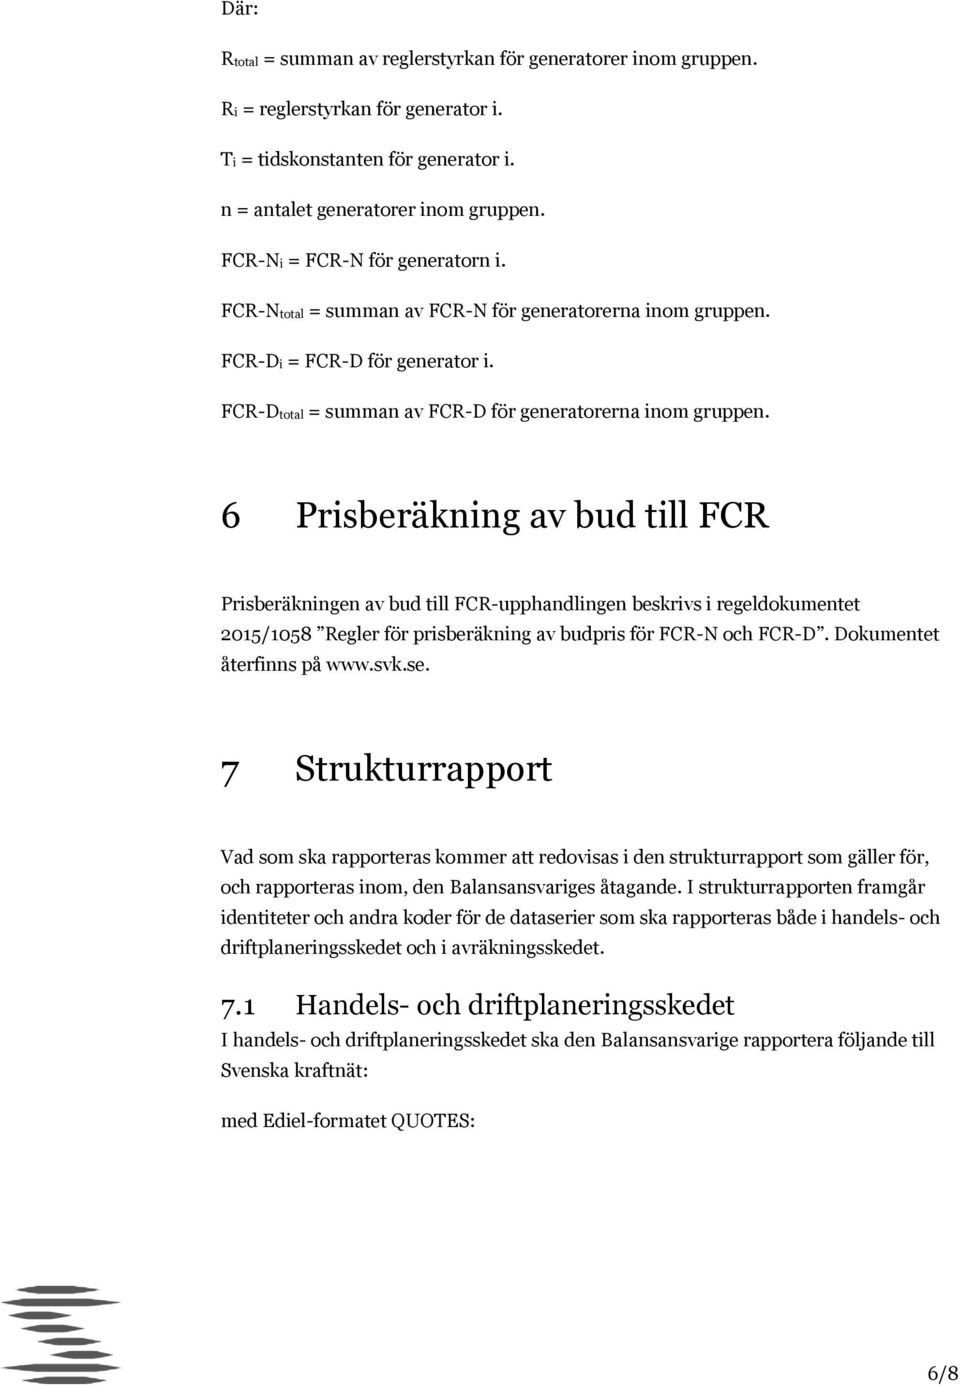 6 Prisberäkning av bud till FCR Prisberäkningen av bud till FCR-upphandlingen beskrivs i regeldokumentet 2015/1058 Regler för prisberäkning av budpris för FCR-N och FCR-D. Dokumentet återfinns på www.